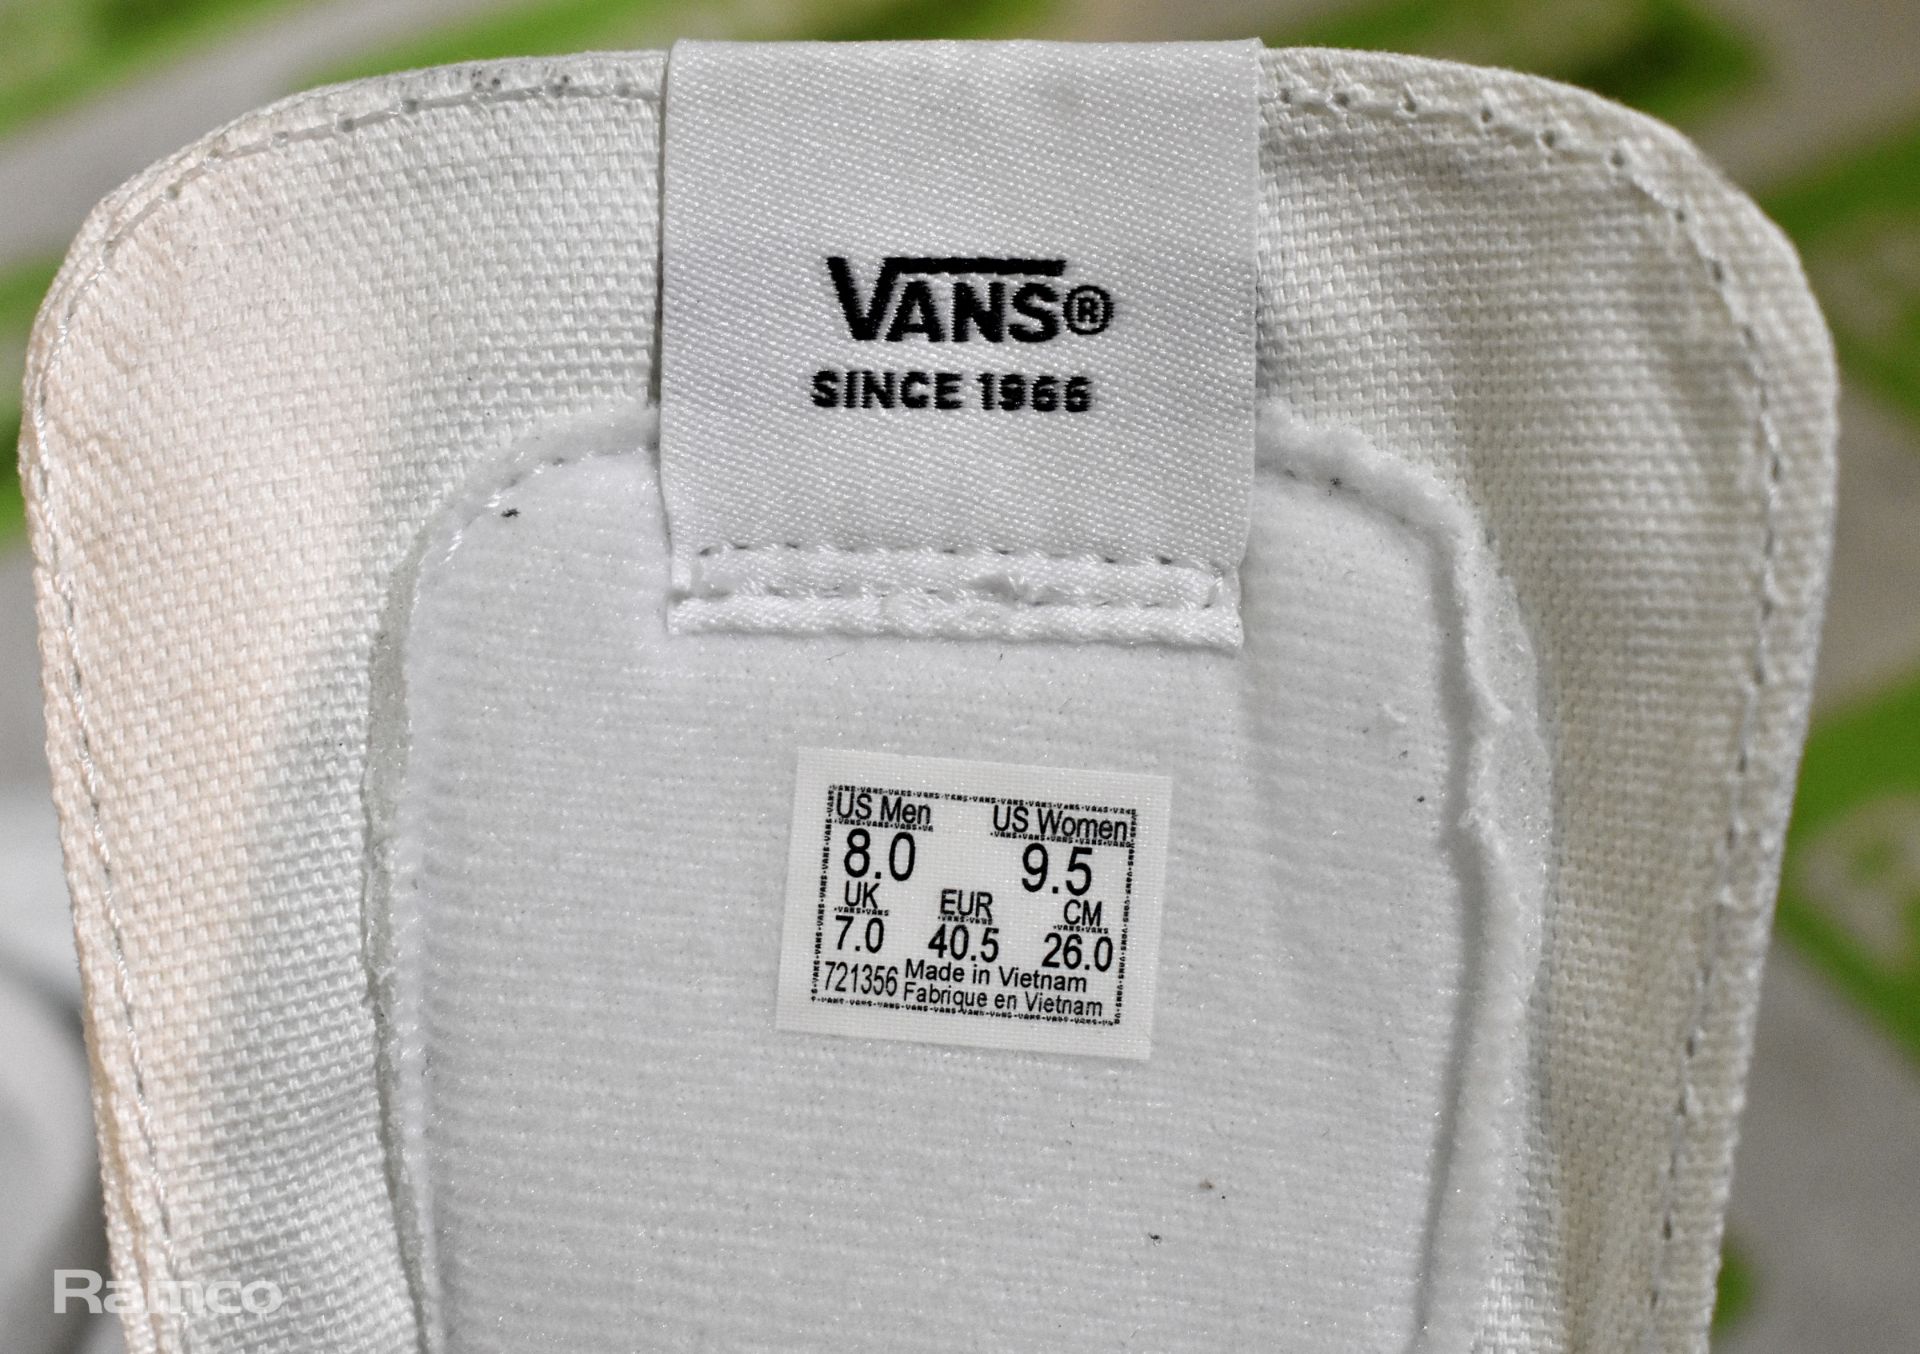 VANS Sk8-Hi white high top trainers - UK size 7 - not worn, still in box - Bild 6 aus 6